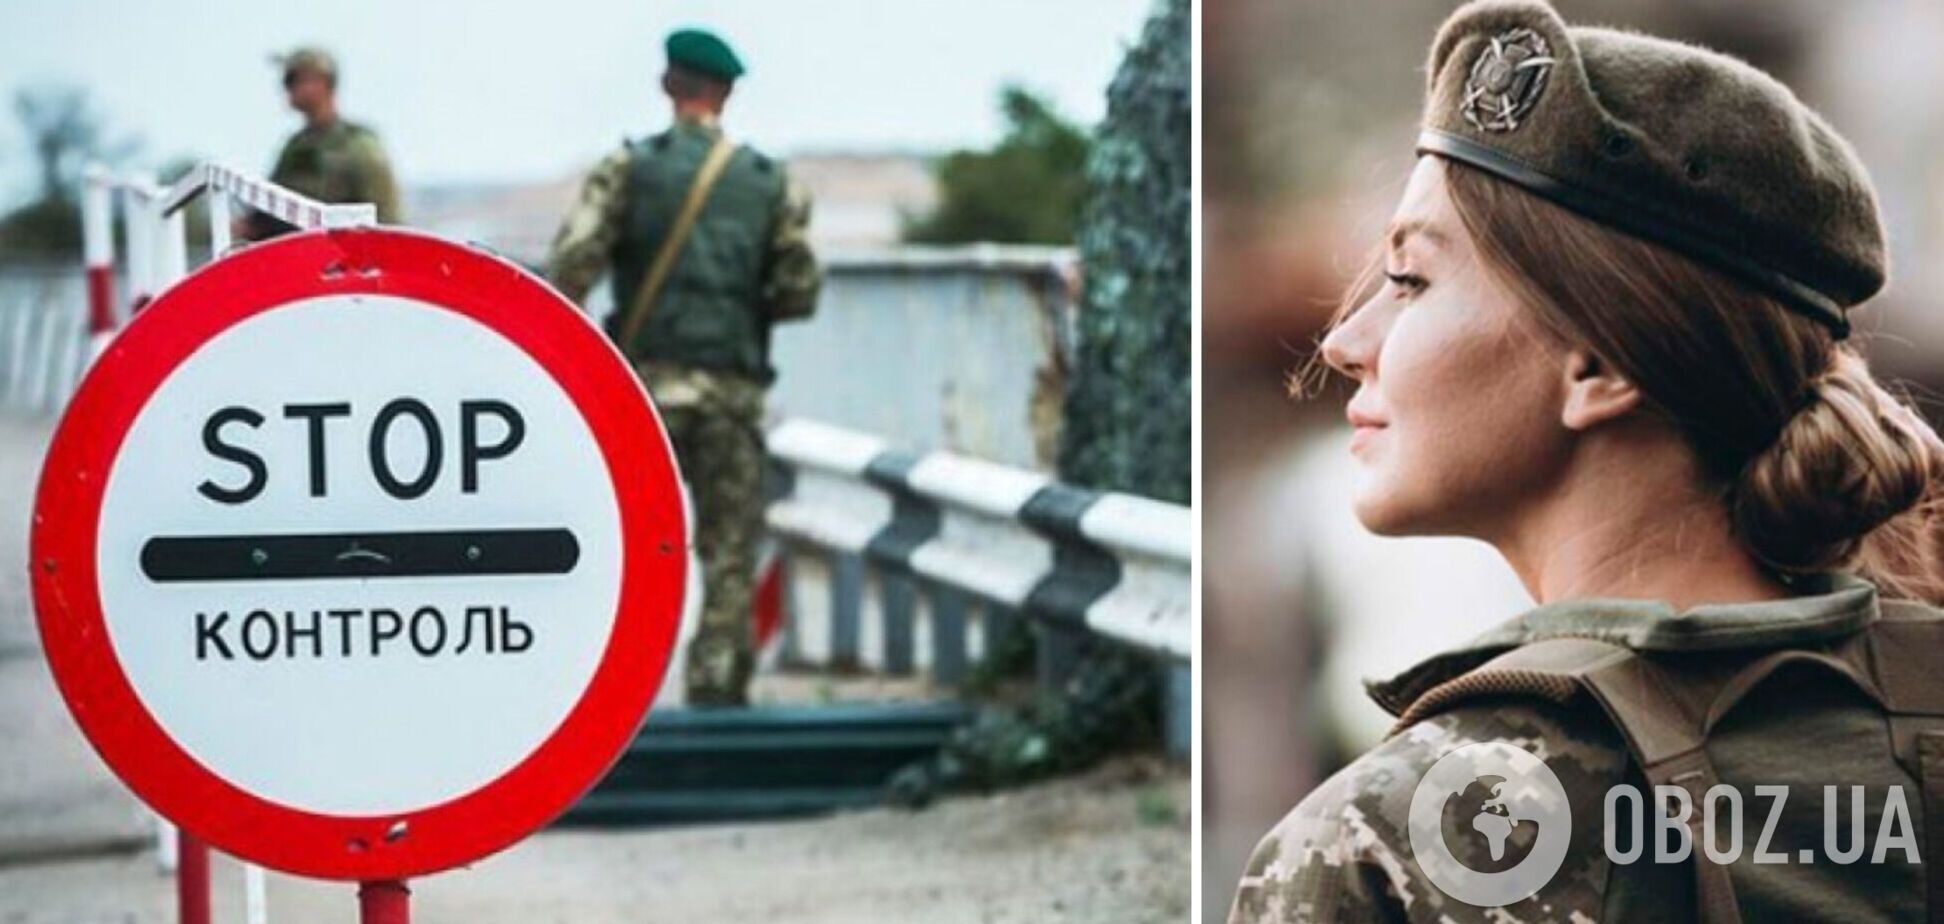 Не тільки чоловікам: в Україні заборонили виїзд за кордон жінкам-чиновницям 